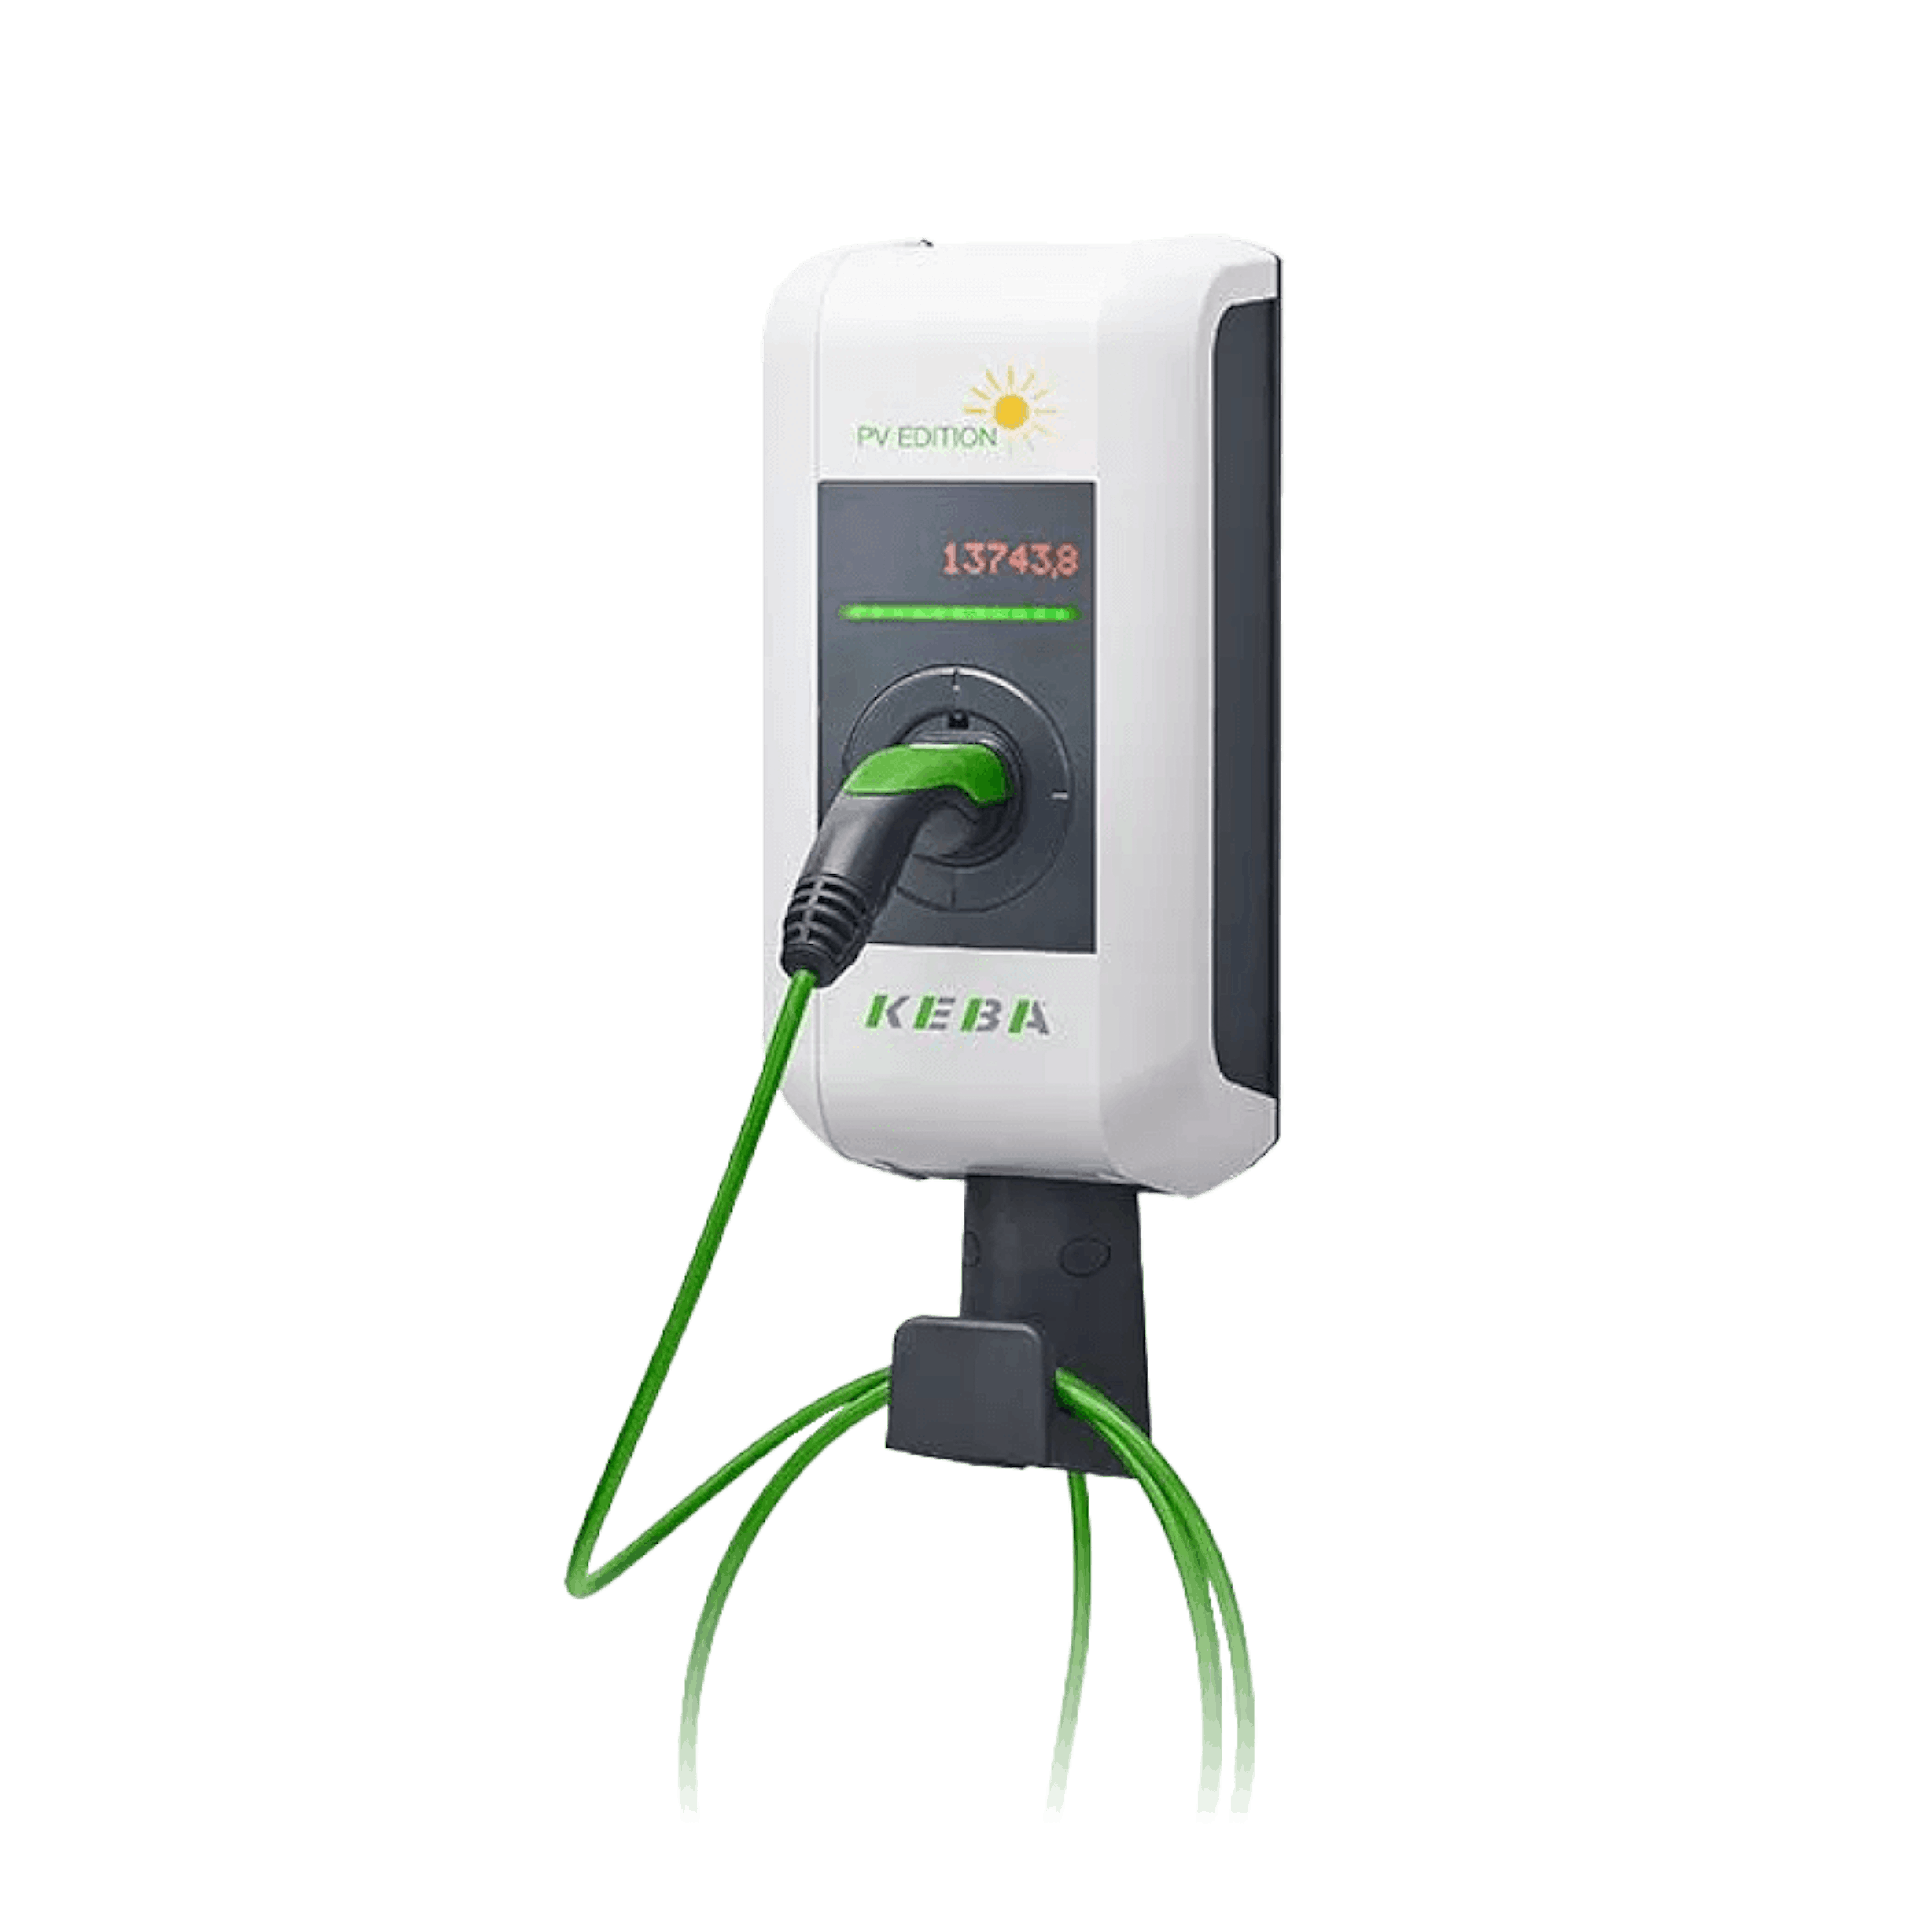 KEBA KeContact P30 PV EDITION (11 kW) – Charging Box mit Ladekabel